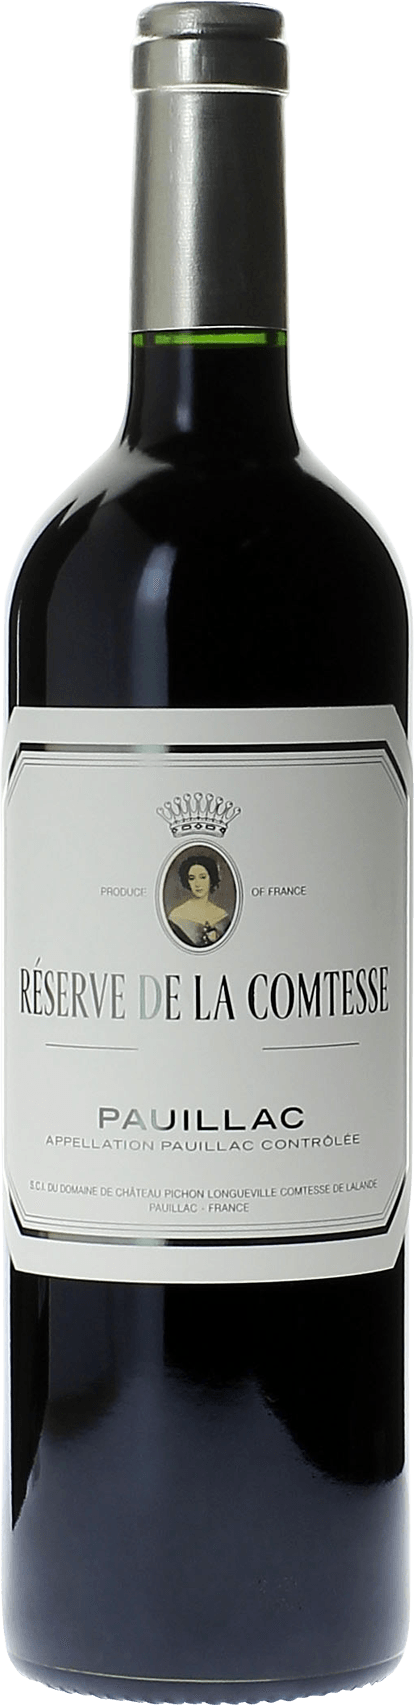 Reserve de la comtesse 2021 2nd Vin de Pichon Comtesse Pauillac, Bordeaux rouge